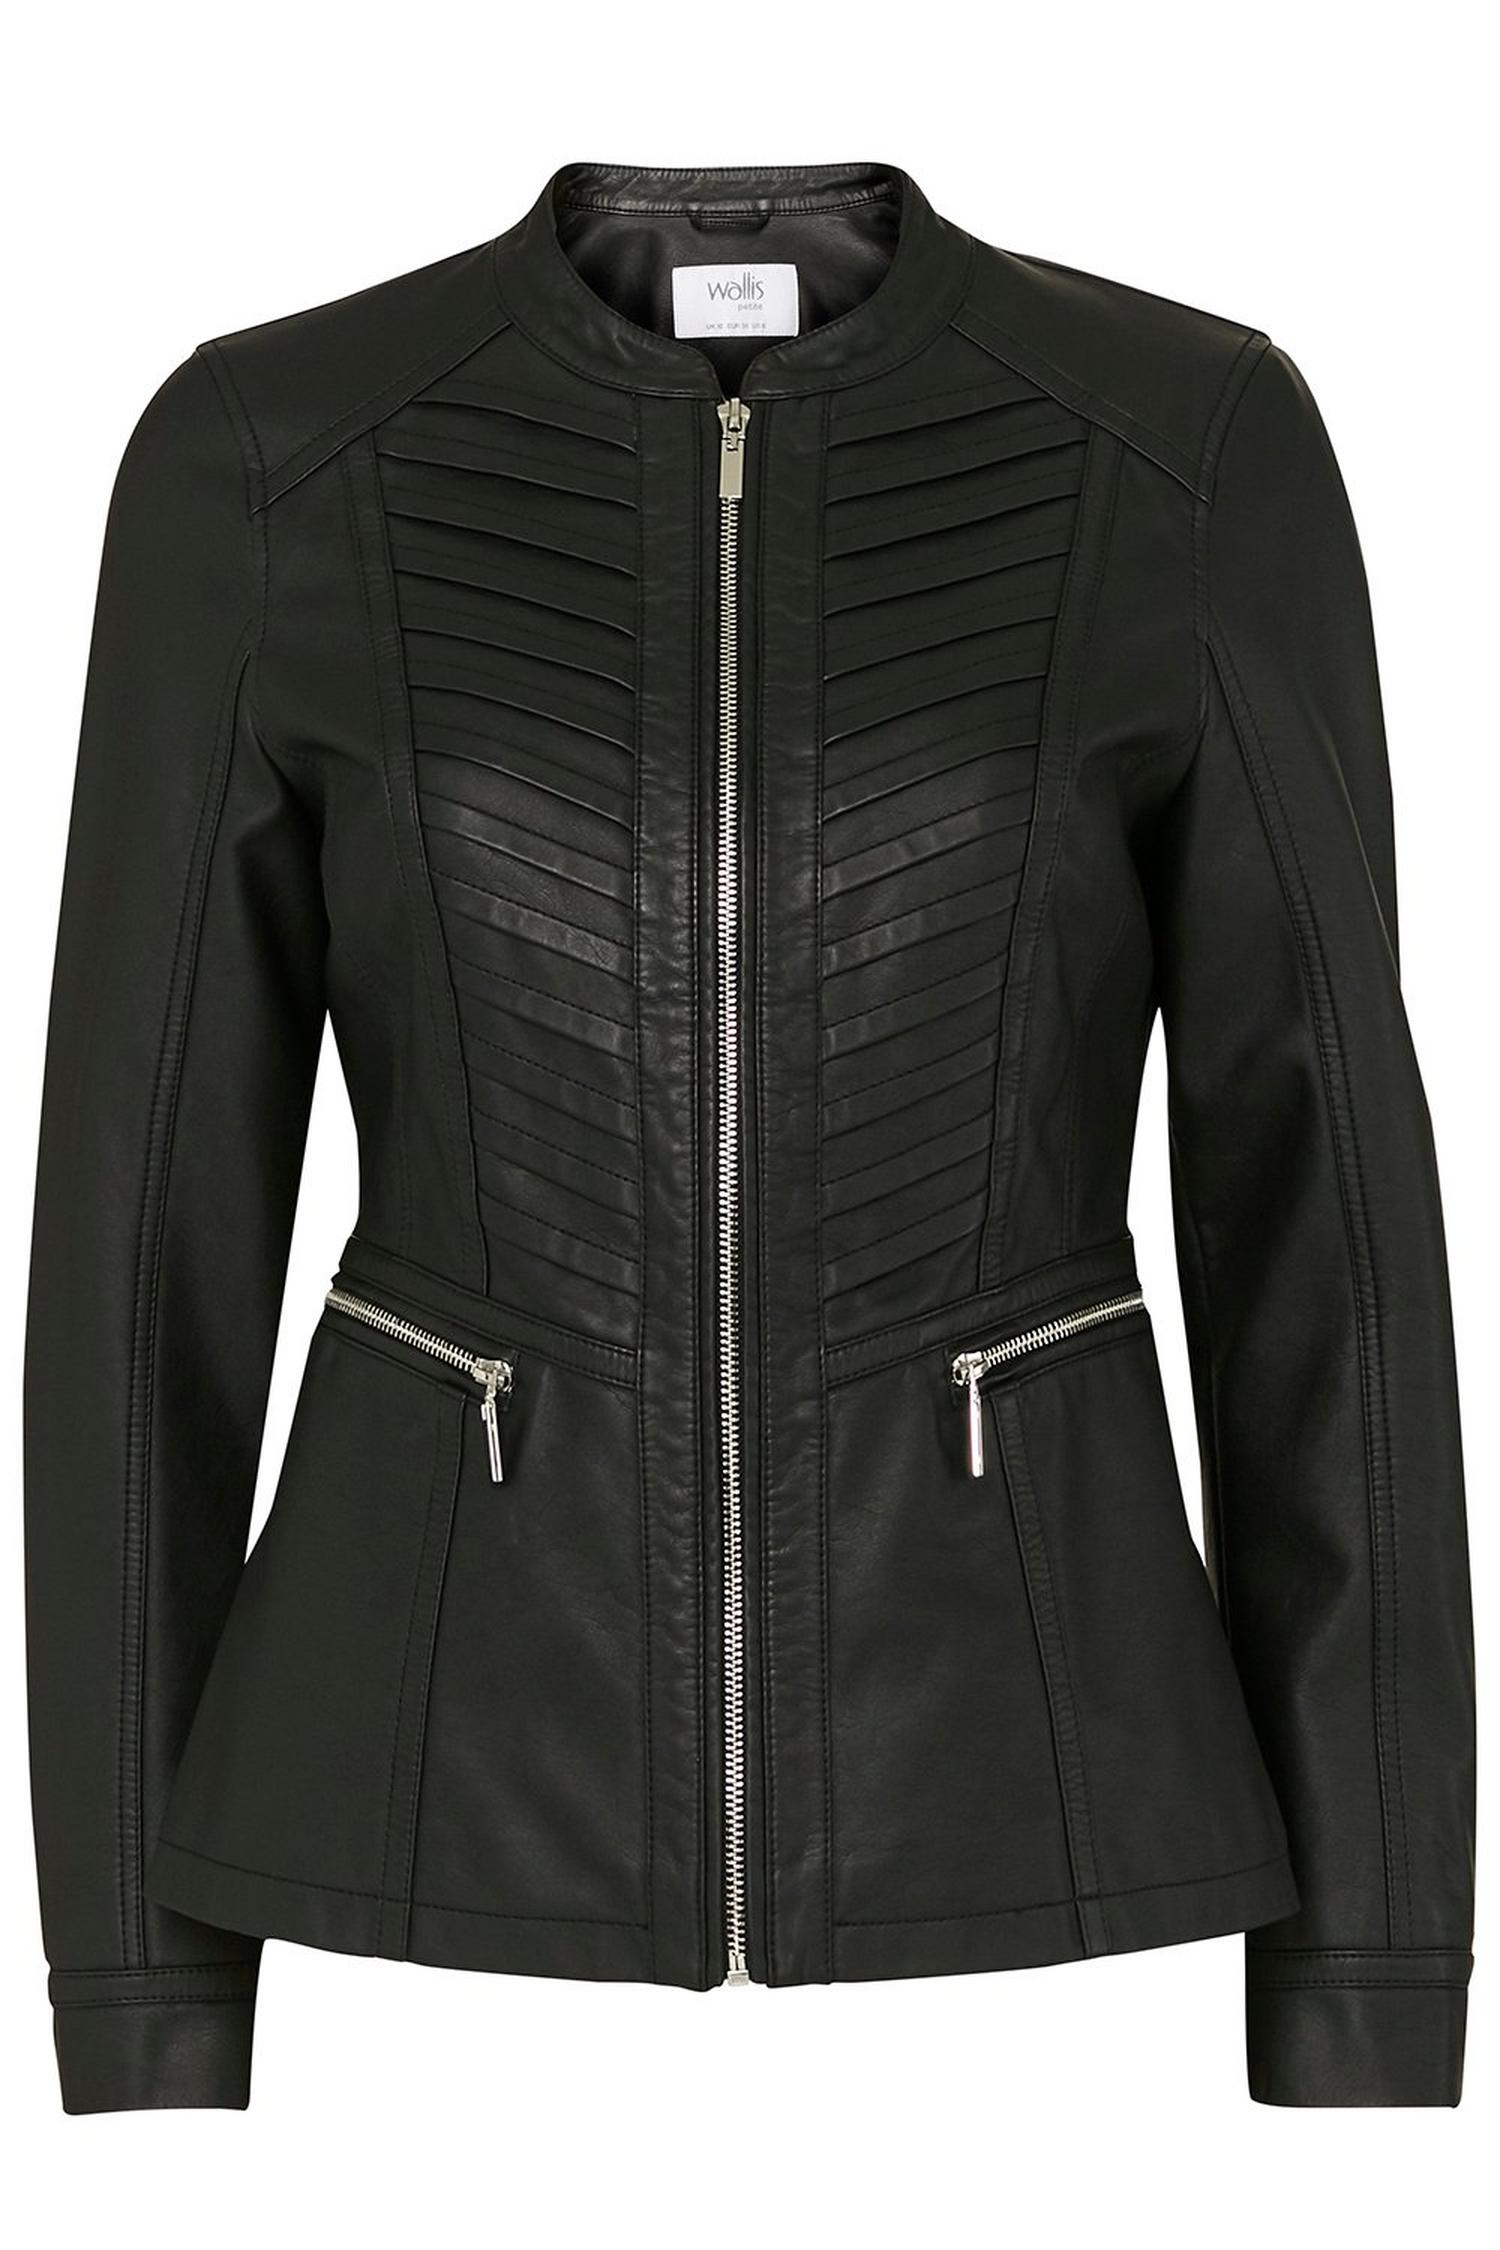 PETITE Black Faux Leather Jacket | Wallis UK